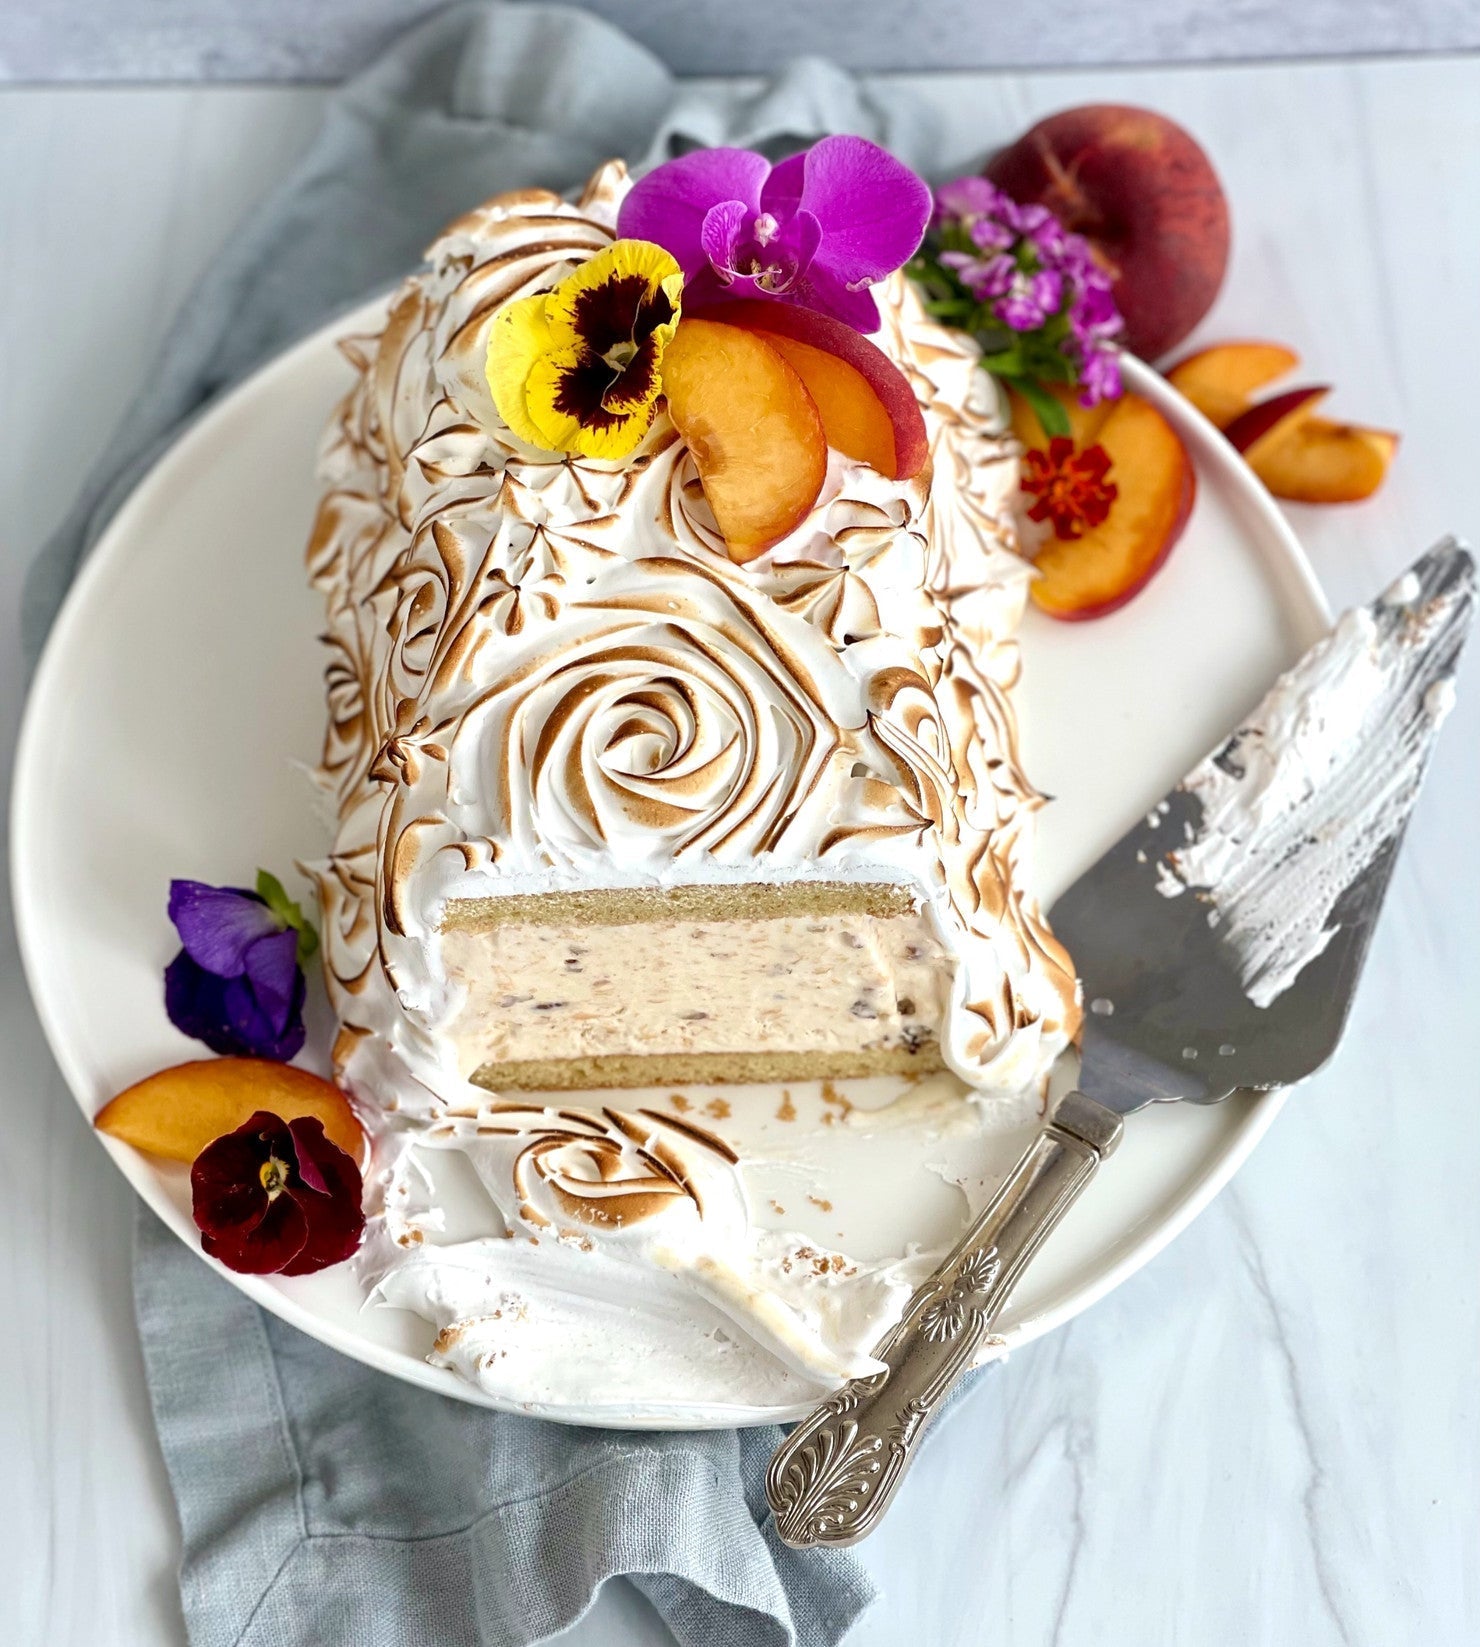 Baked Alaska – Dessert Recipes